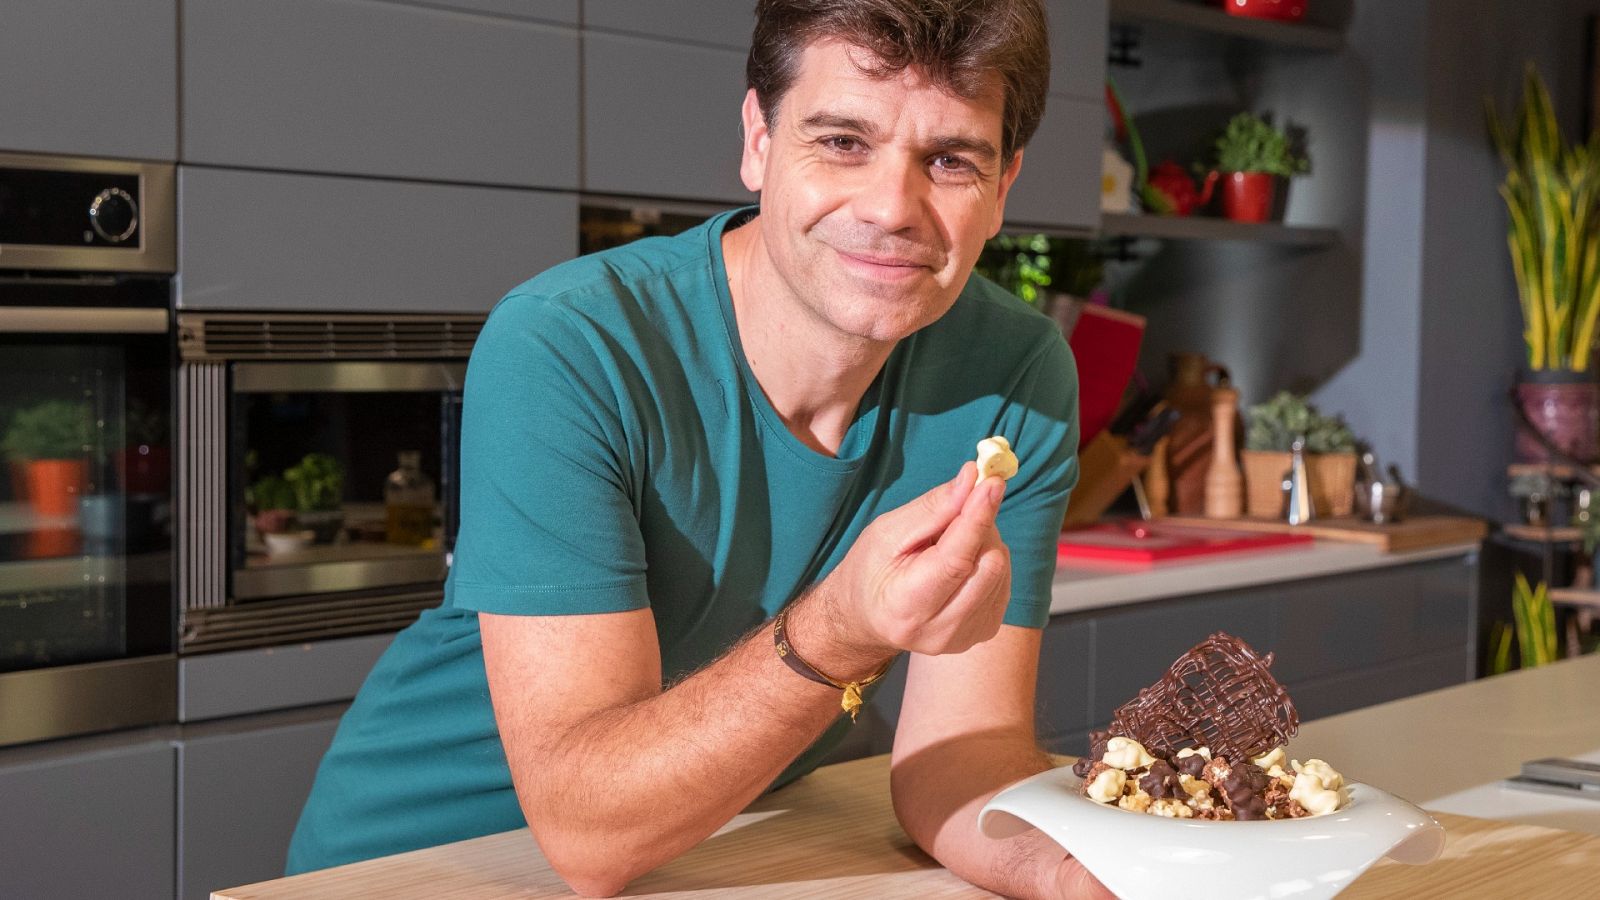 Sergio cocina - Palomitas bañadas en chocolate